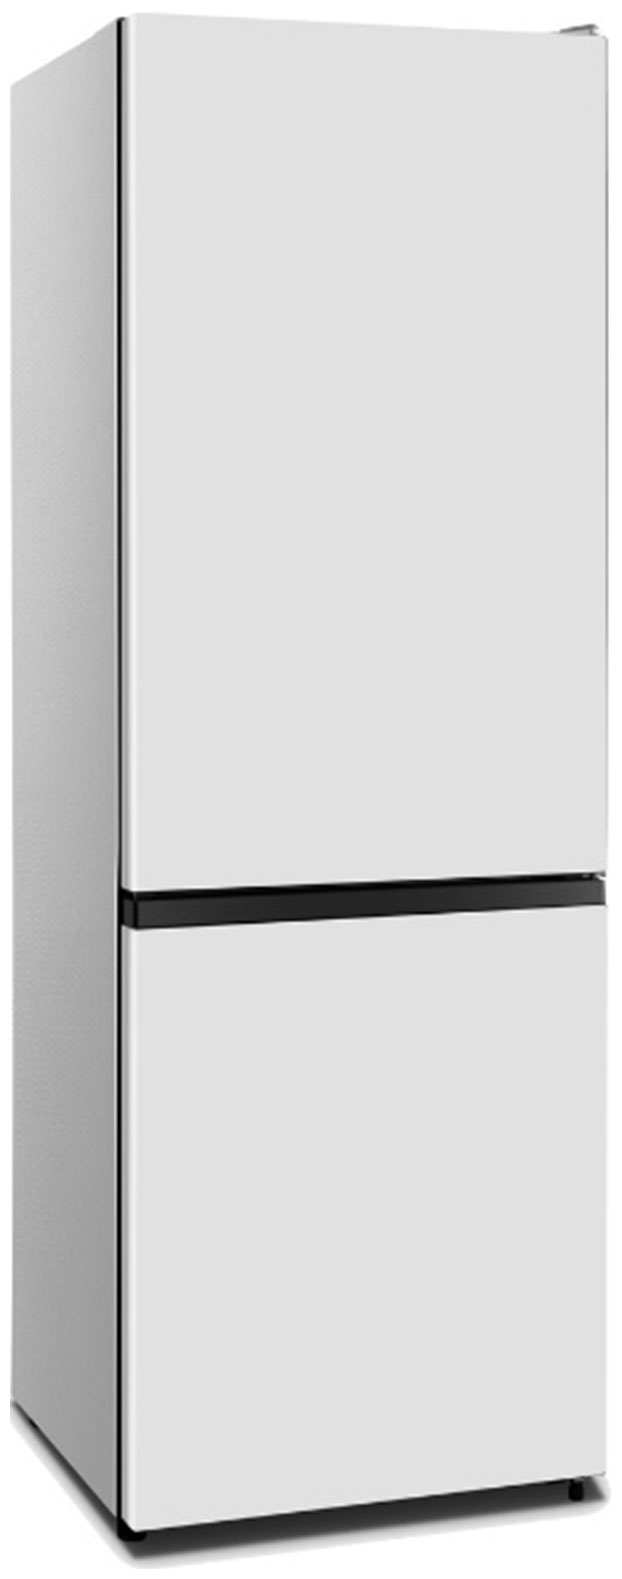 Холодильник HISENSE RB372N4AW1 белый холодильник hisense rs711n4afe